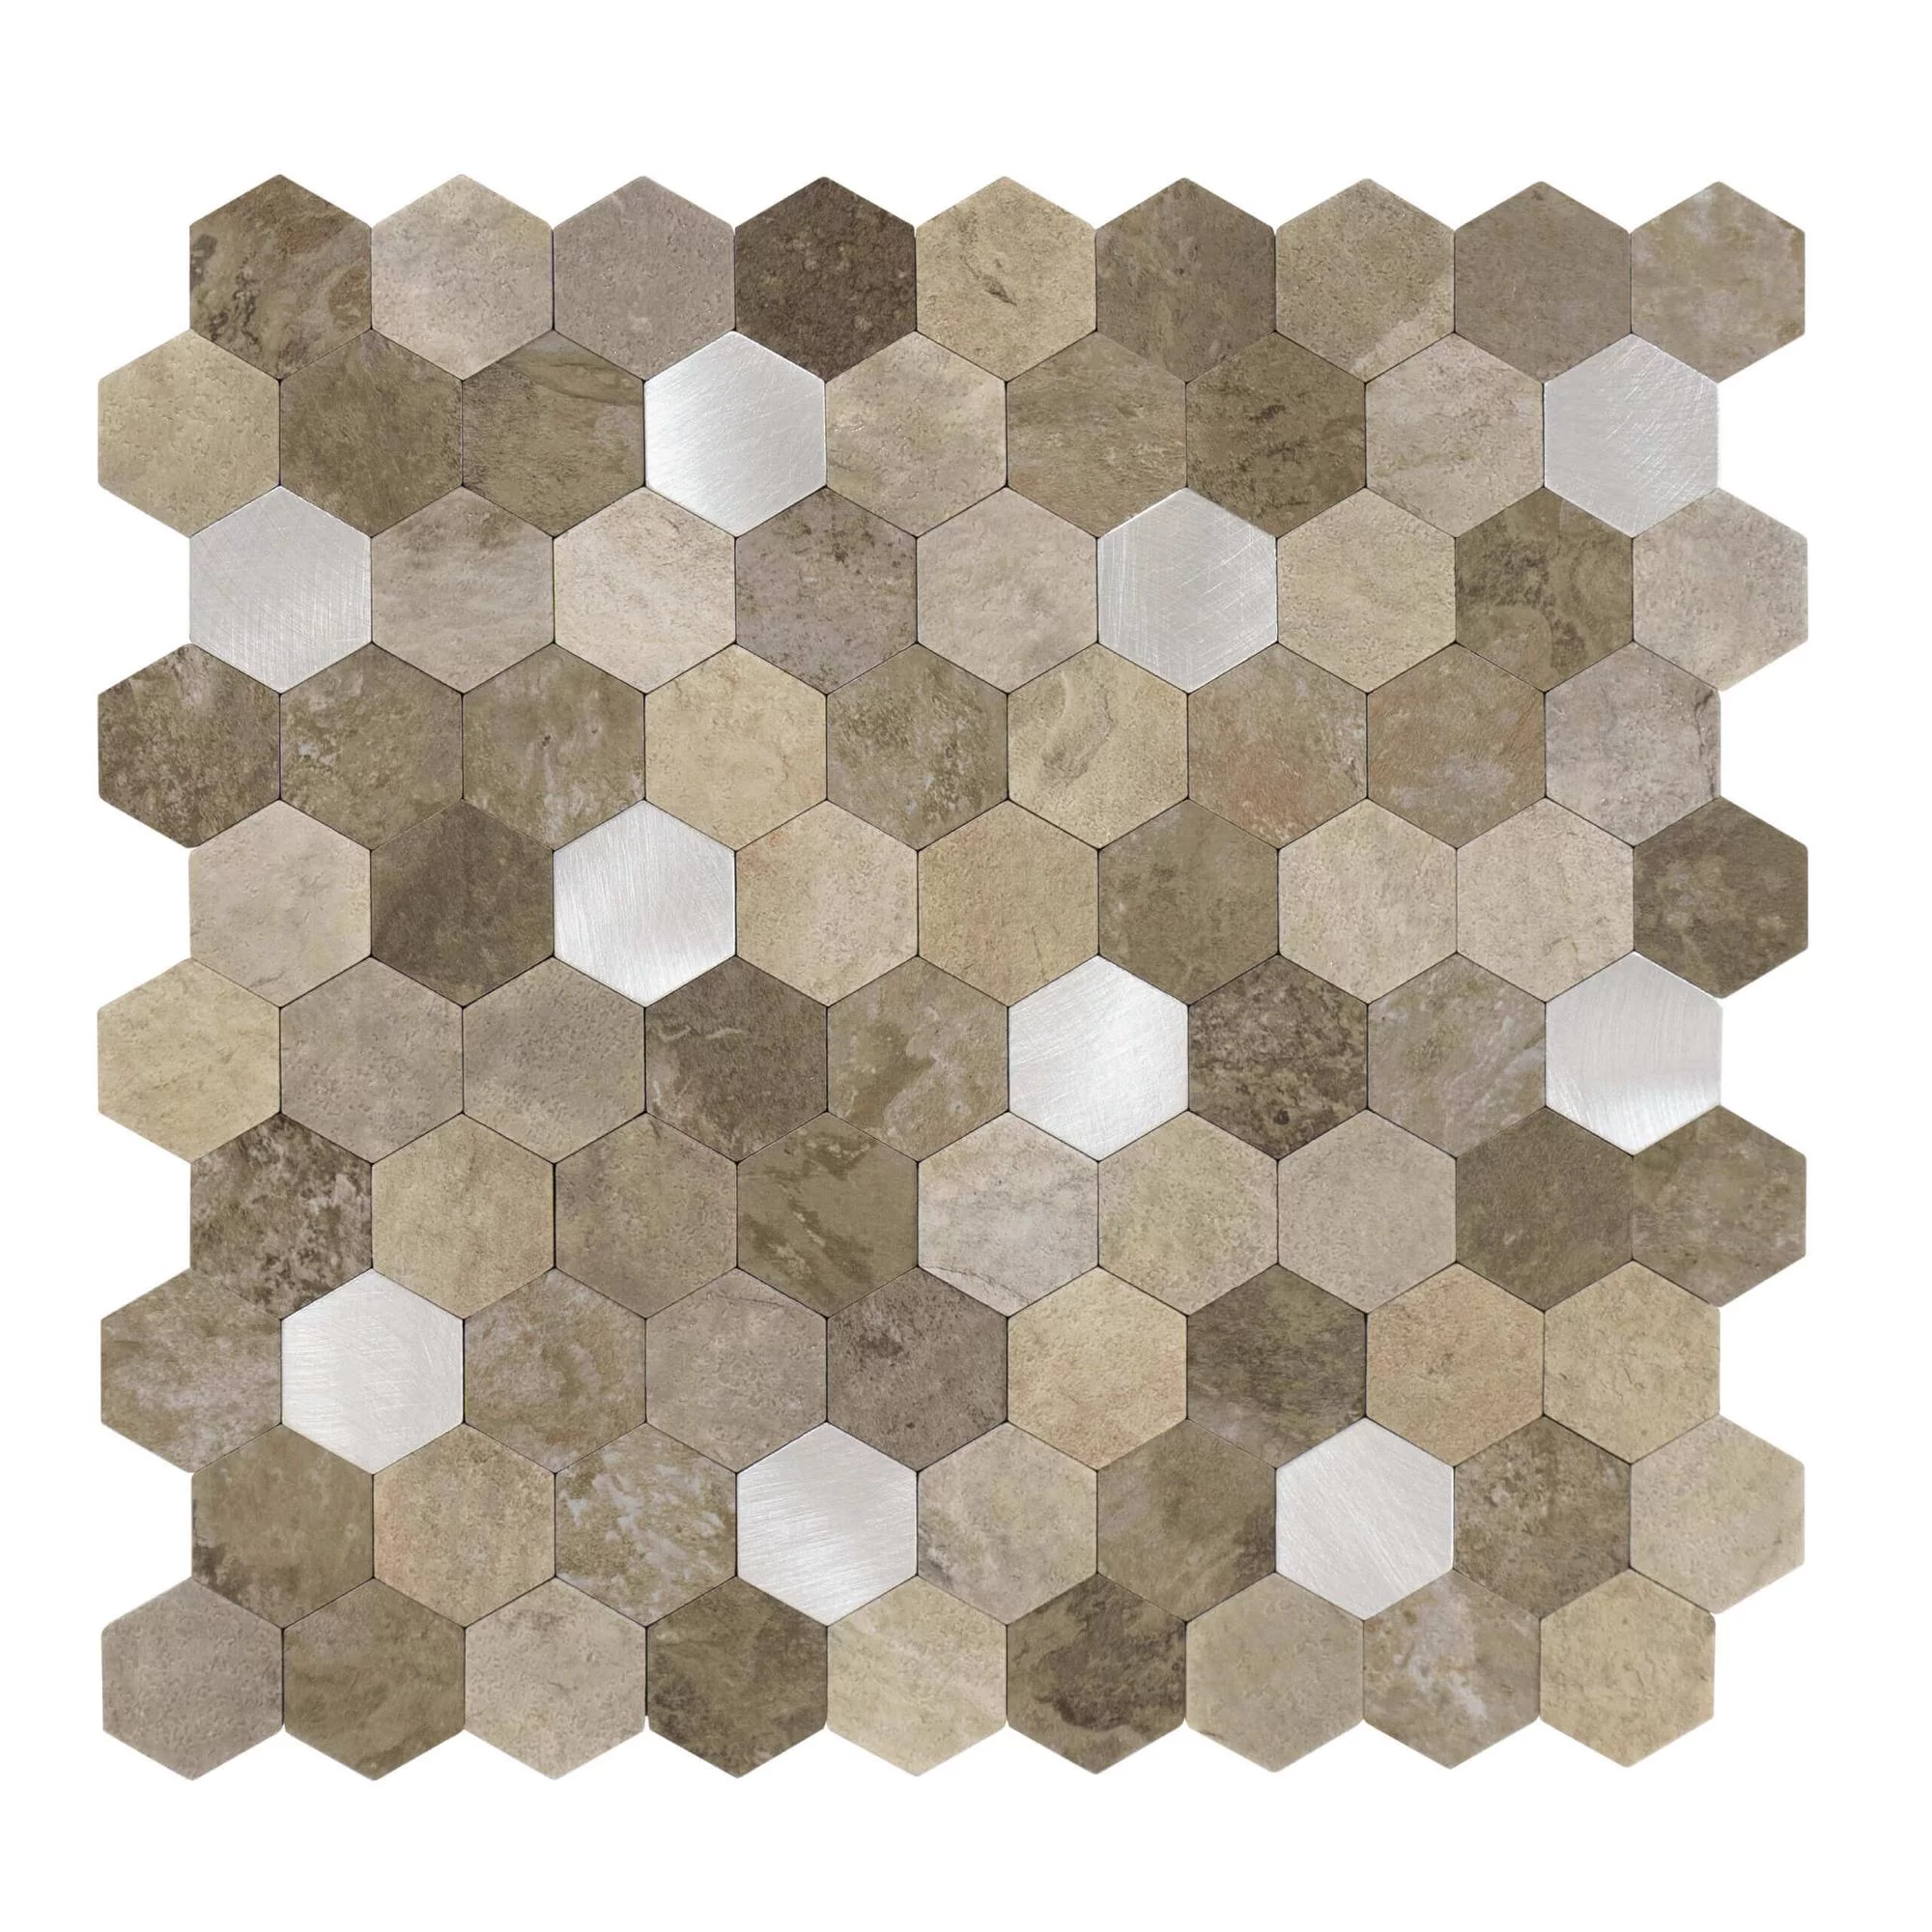 carreaux-autocollants-forme-hexagonale-0.88m².-11-pcs-aspect-pierre-beige-argent